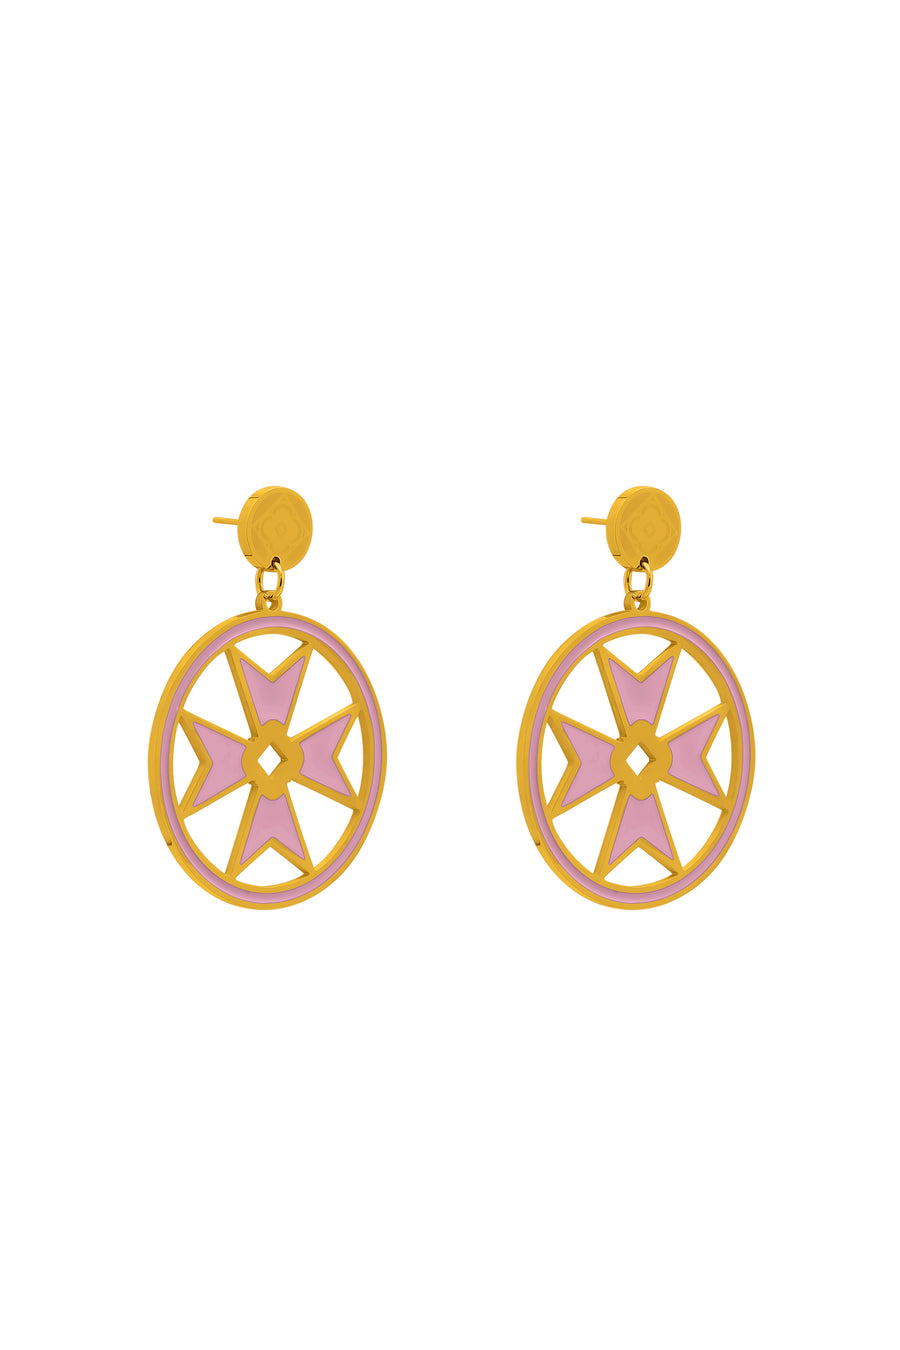 Catriona’s Medium Maltese Cross Hoop Earring Set in Pink Enamel